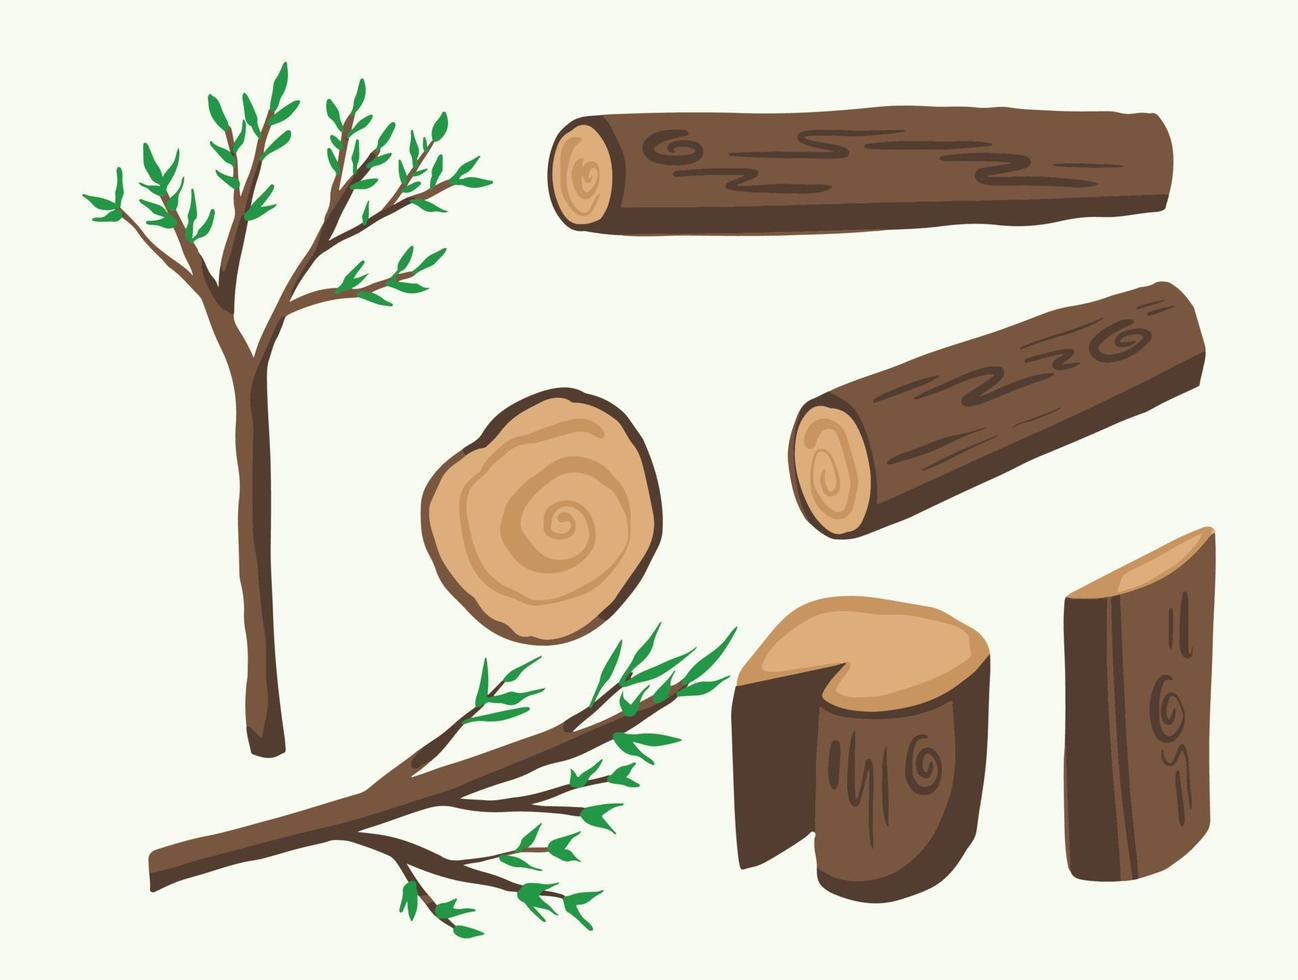 Illustrationsset aus Baum und Wald oder Ast und Stumpf in verschiedenen Formen und Winkeln. Vektor flache Kunststilzeichnung mit Cartoon-Kunststil.